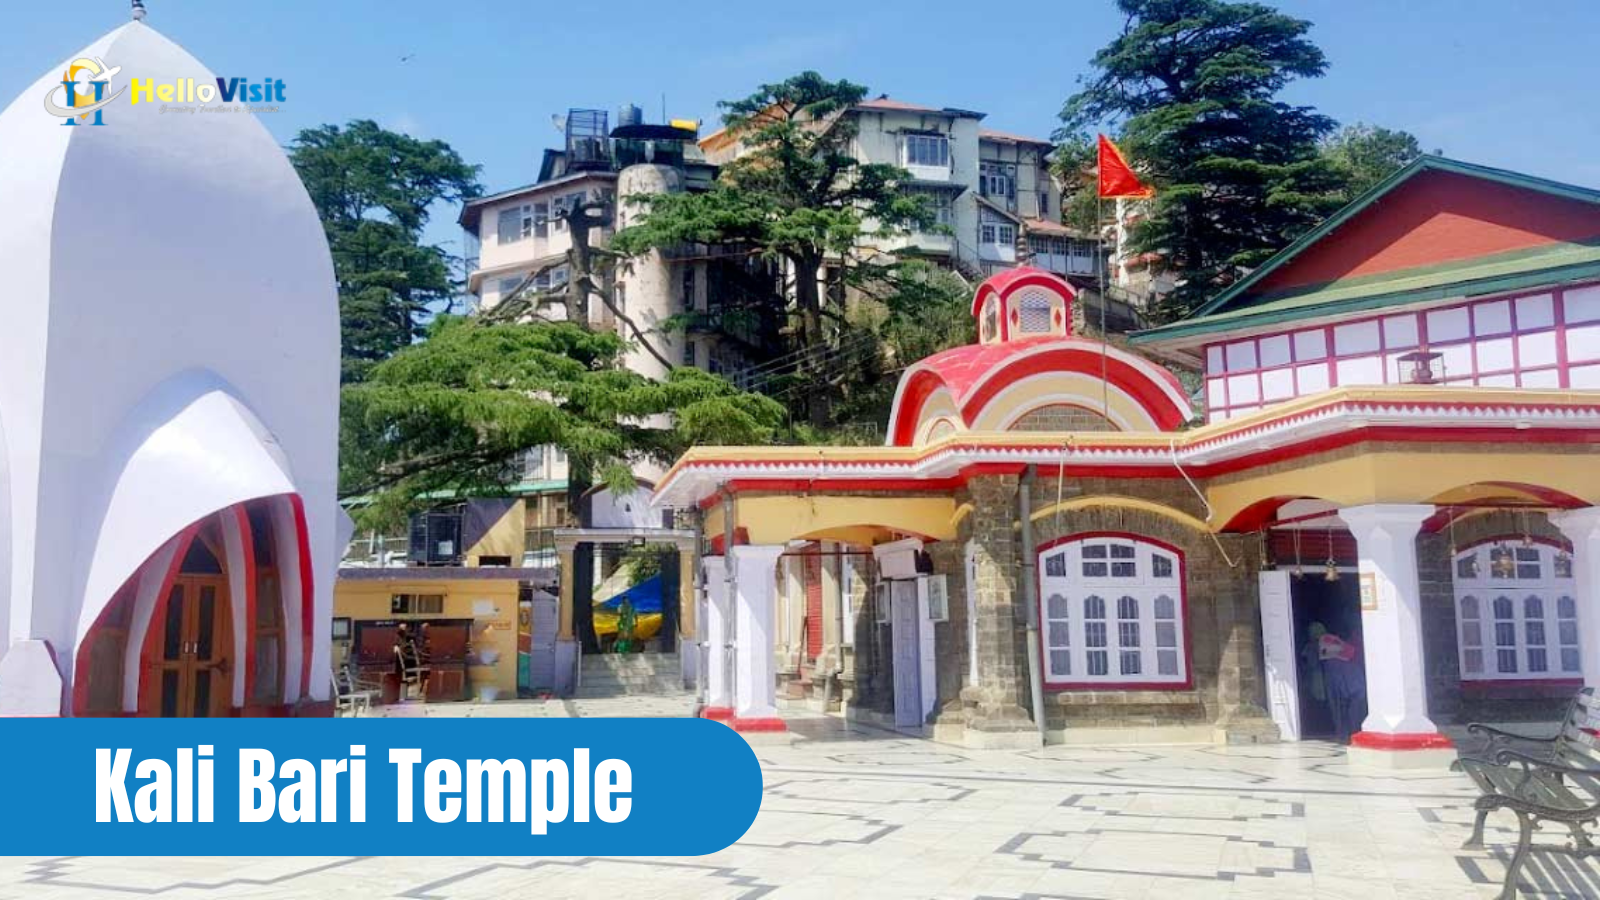 Kali Bari Temple, shimla